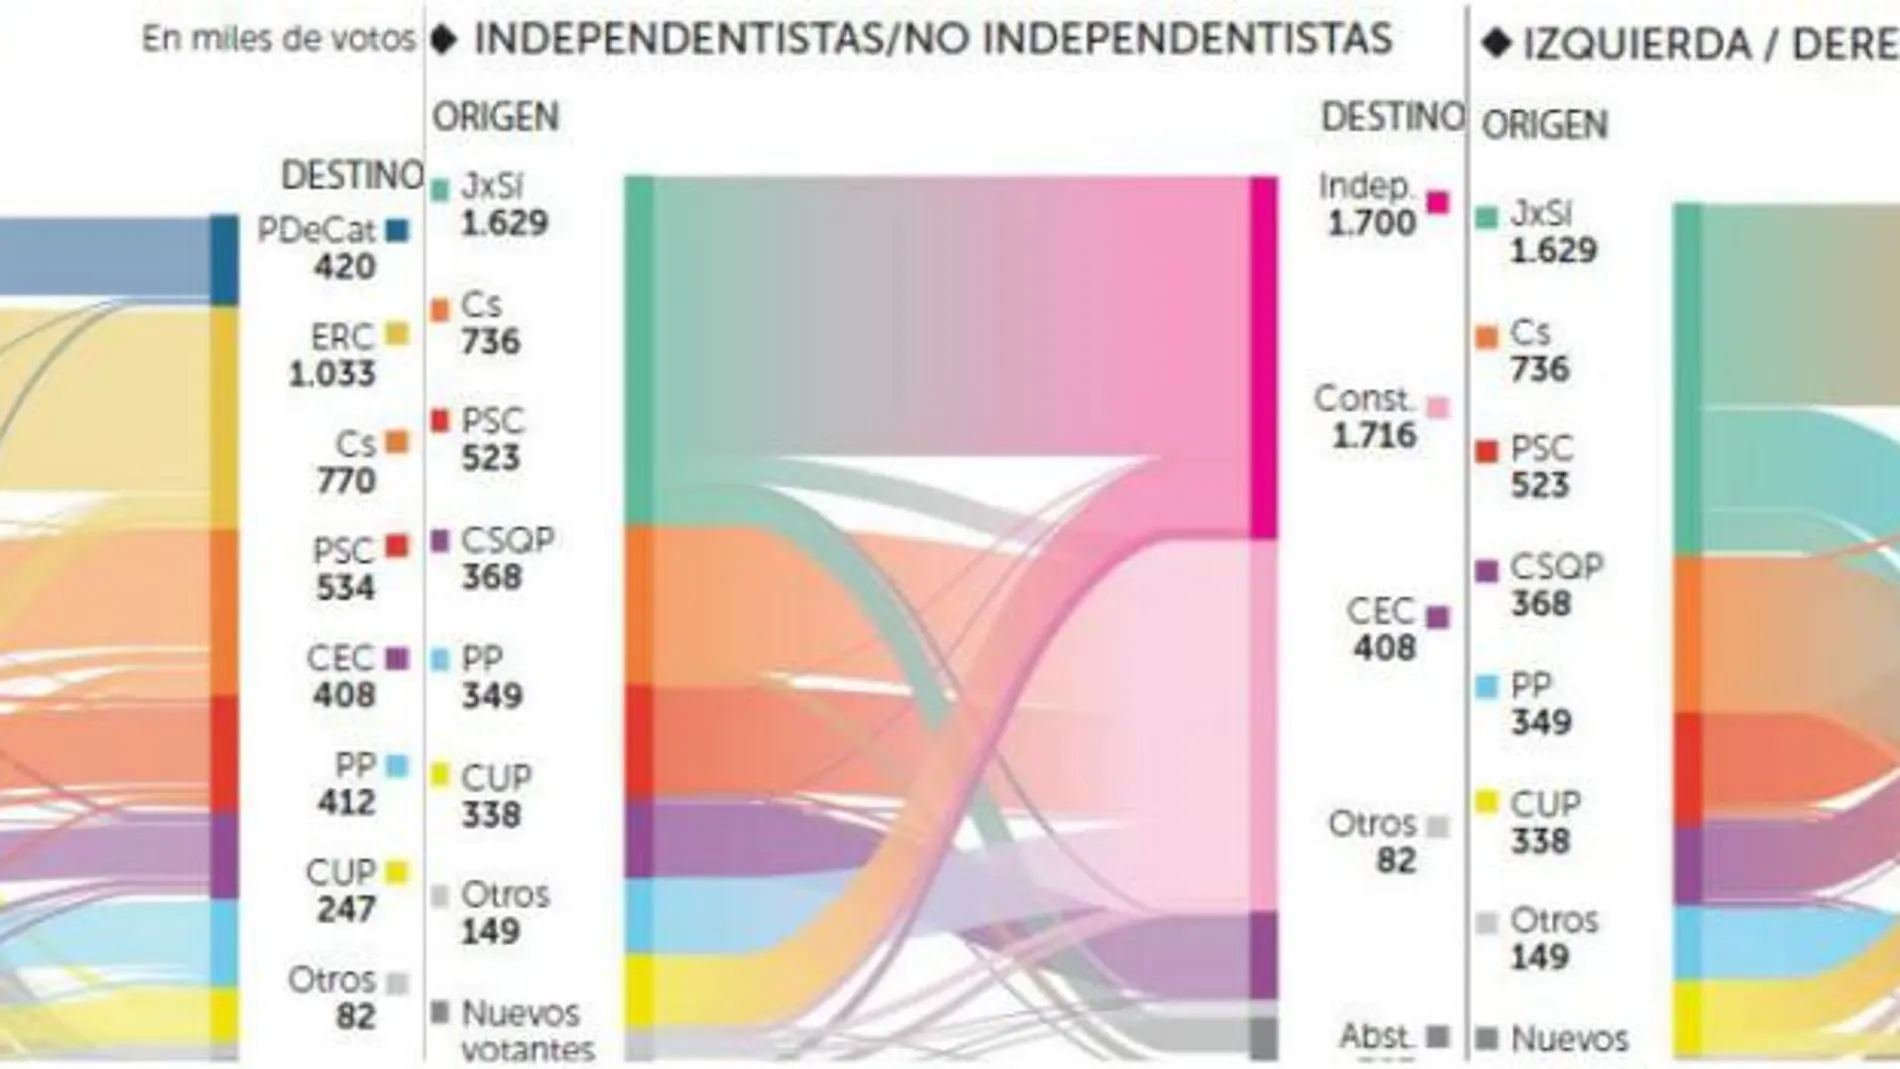 Más de 120.000 votantes de JxSí se fugan a partidos constitucionalistas